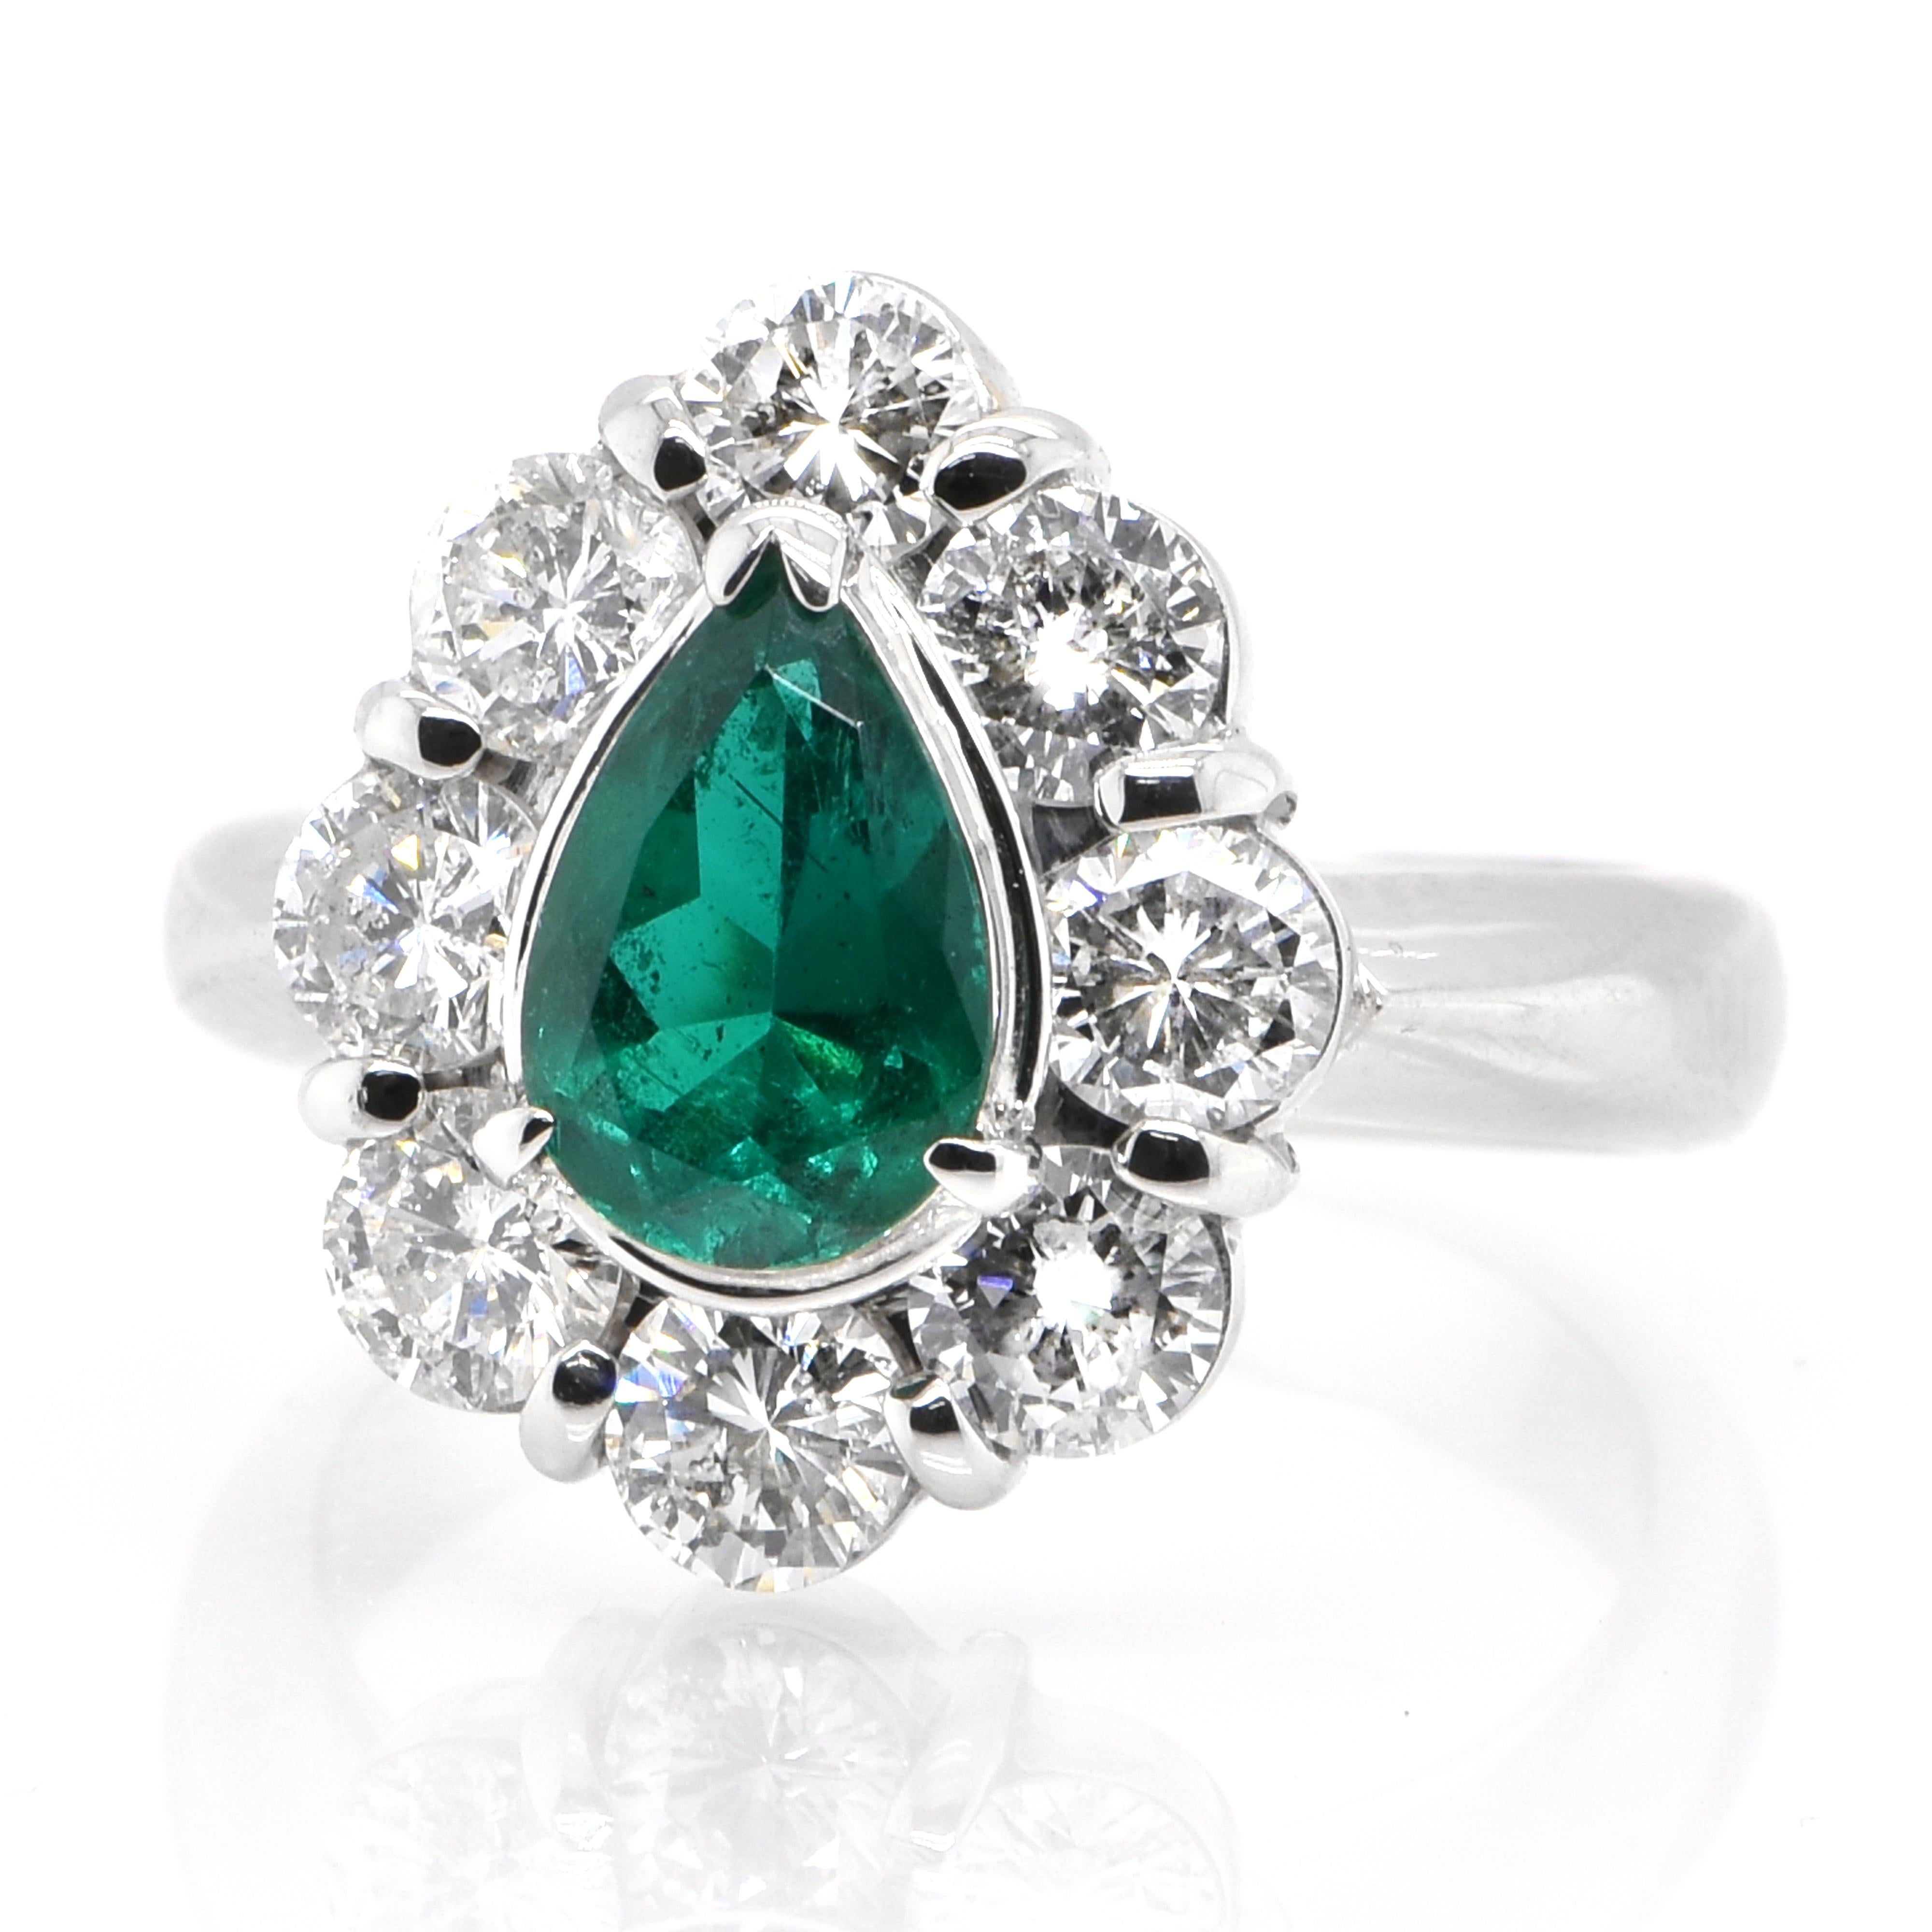 Ein atemberaubender Ring mit einem natürlichen kolumbianischen Smaragd von 0,98 Karat und Diamanten von 1,85 Karat, gefasst in Platin. Seit Tausenden von Jahren bewundern die Menschen das Grün des Smaragds. Smaragde werden seit jeher mit den